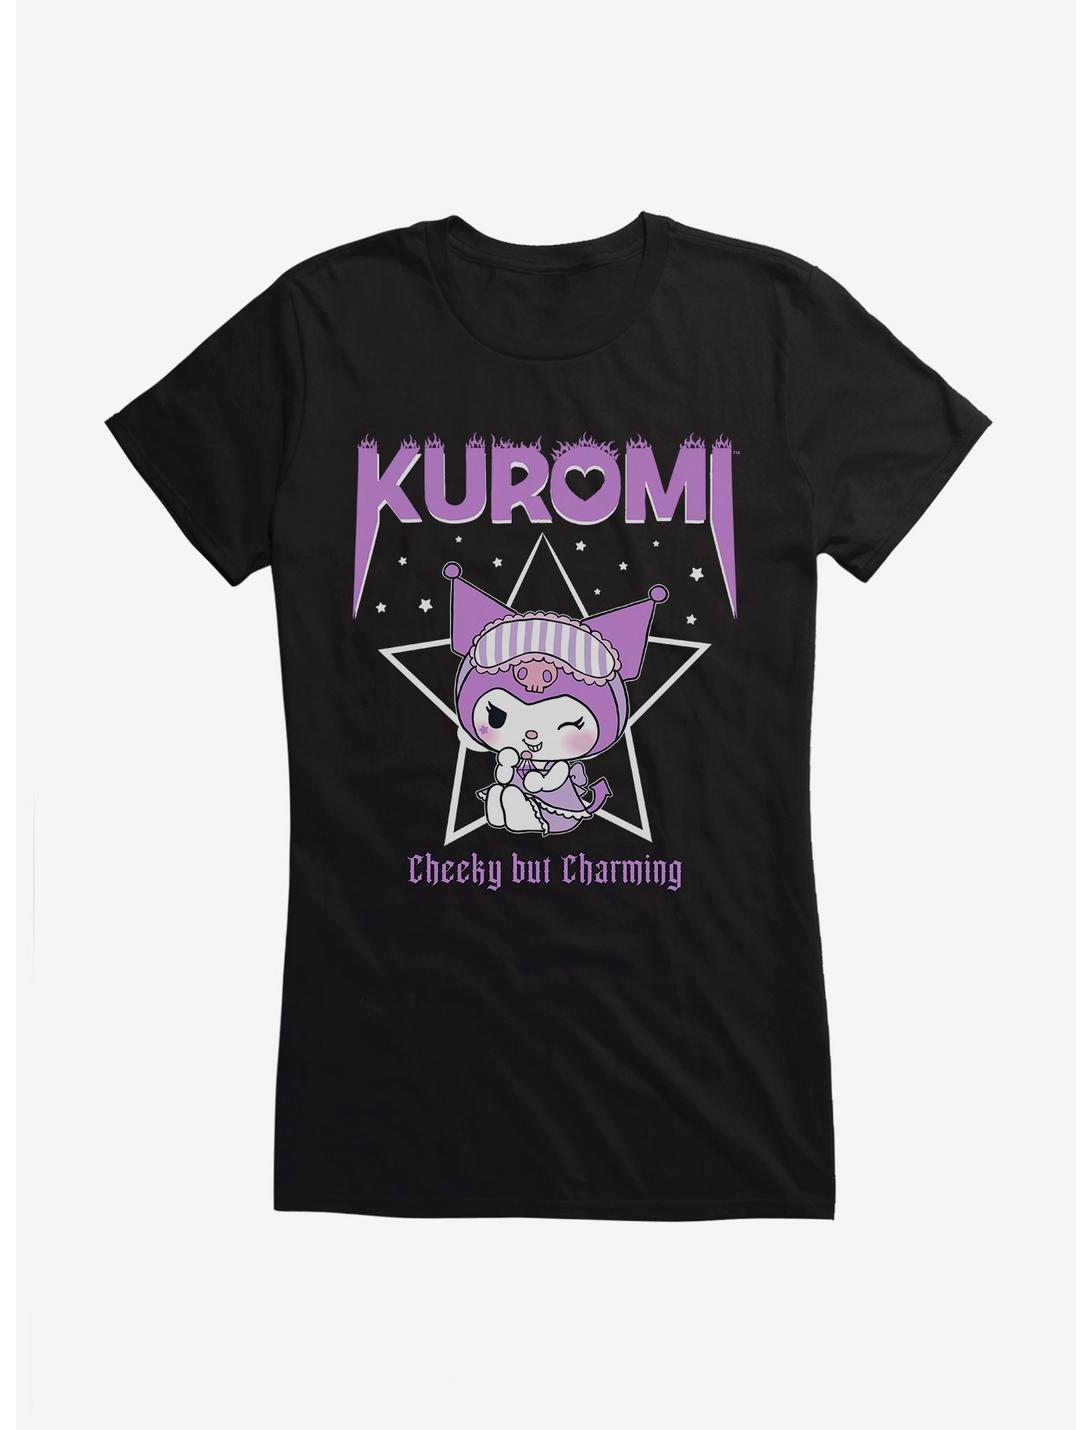 Kuromi Cheeky But Charming Girls T-Shirt, BLACK, hi-res